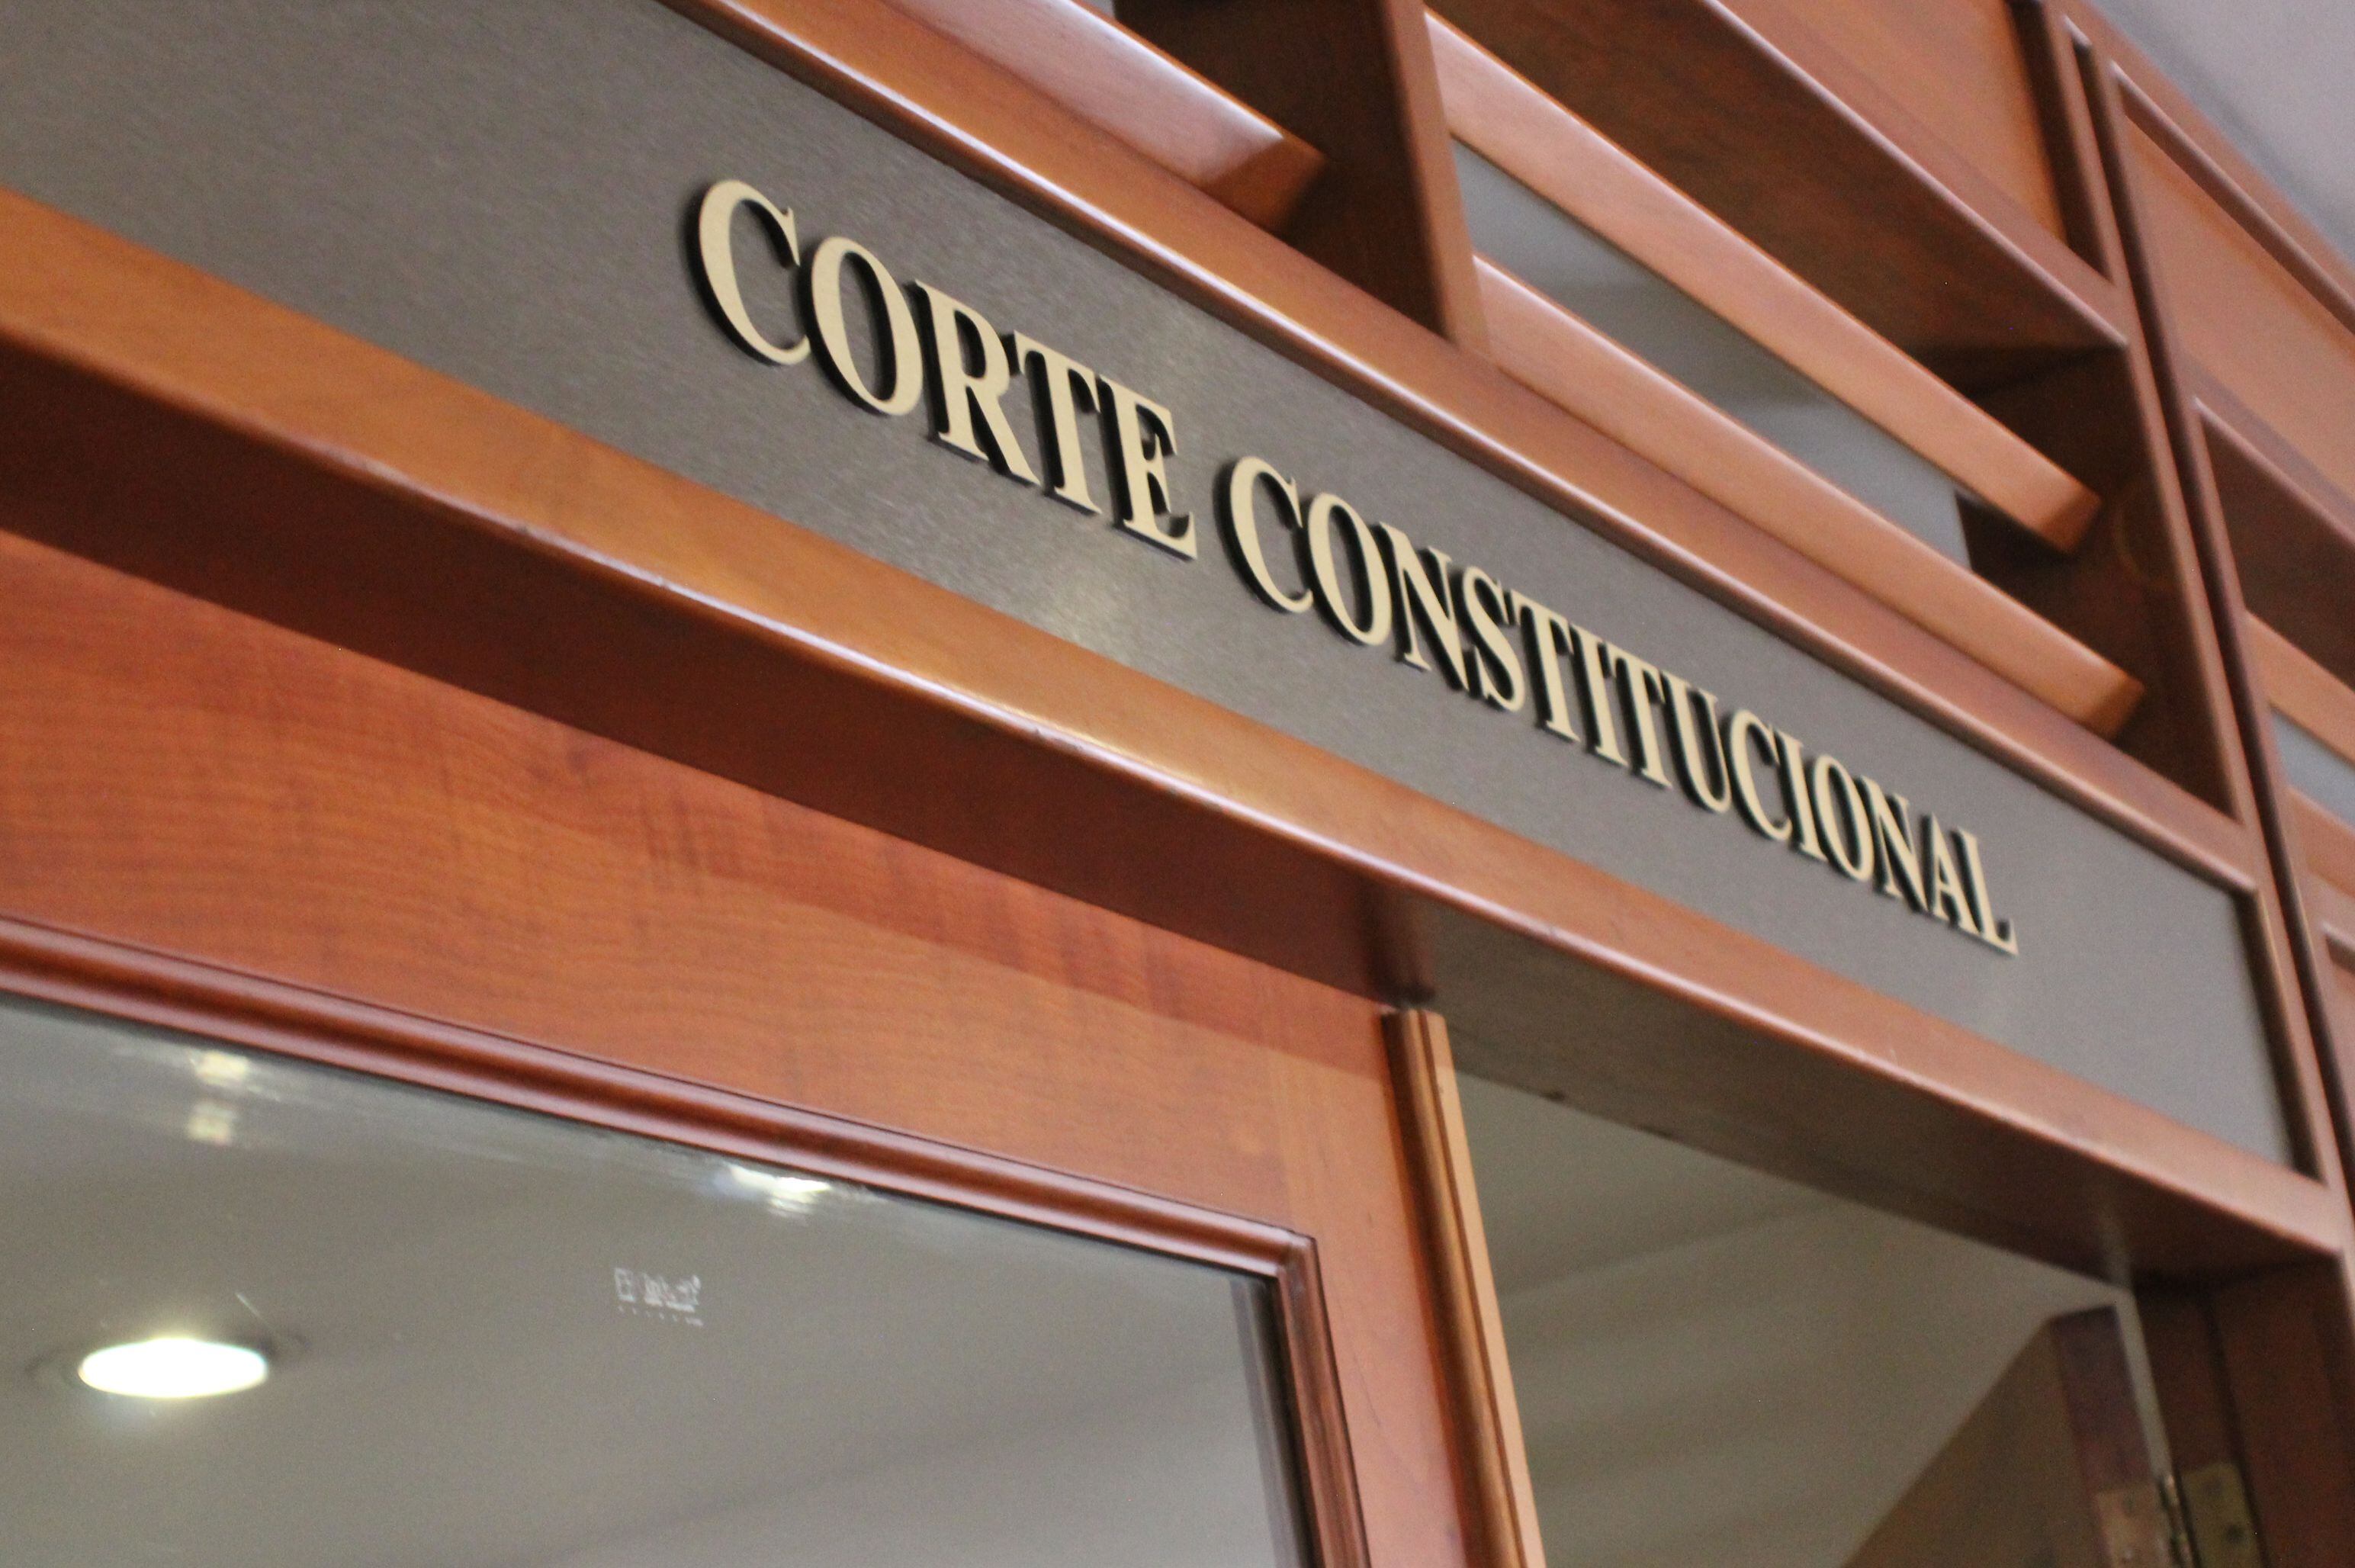 La Corte Constitucional actúa como tribunal colegiado con independencia de los demás organismos del Estado - crédito Corte Constitucional.